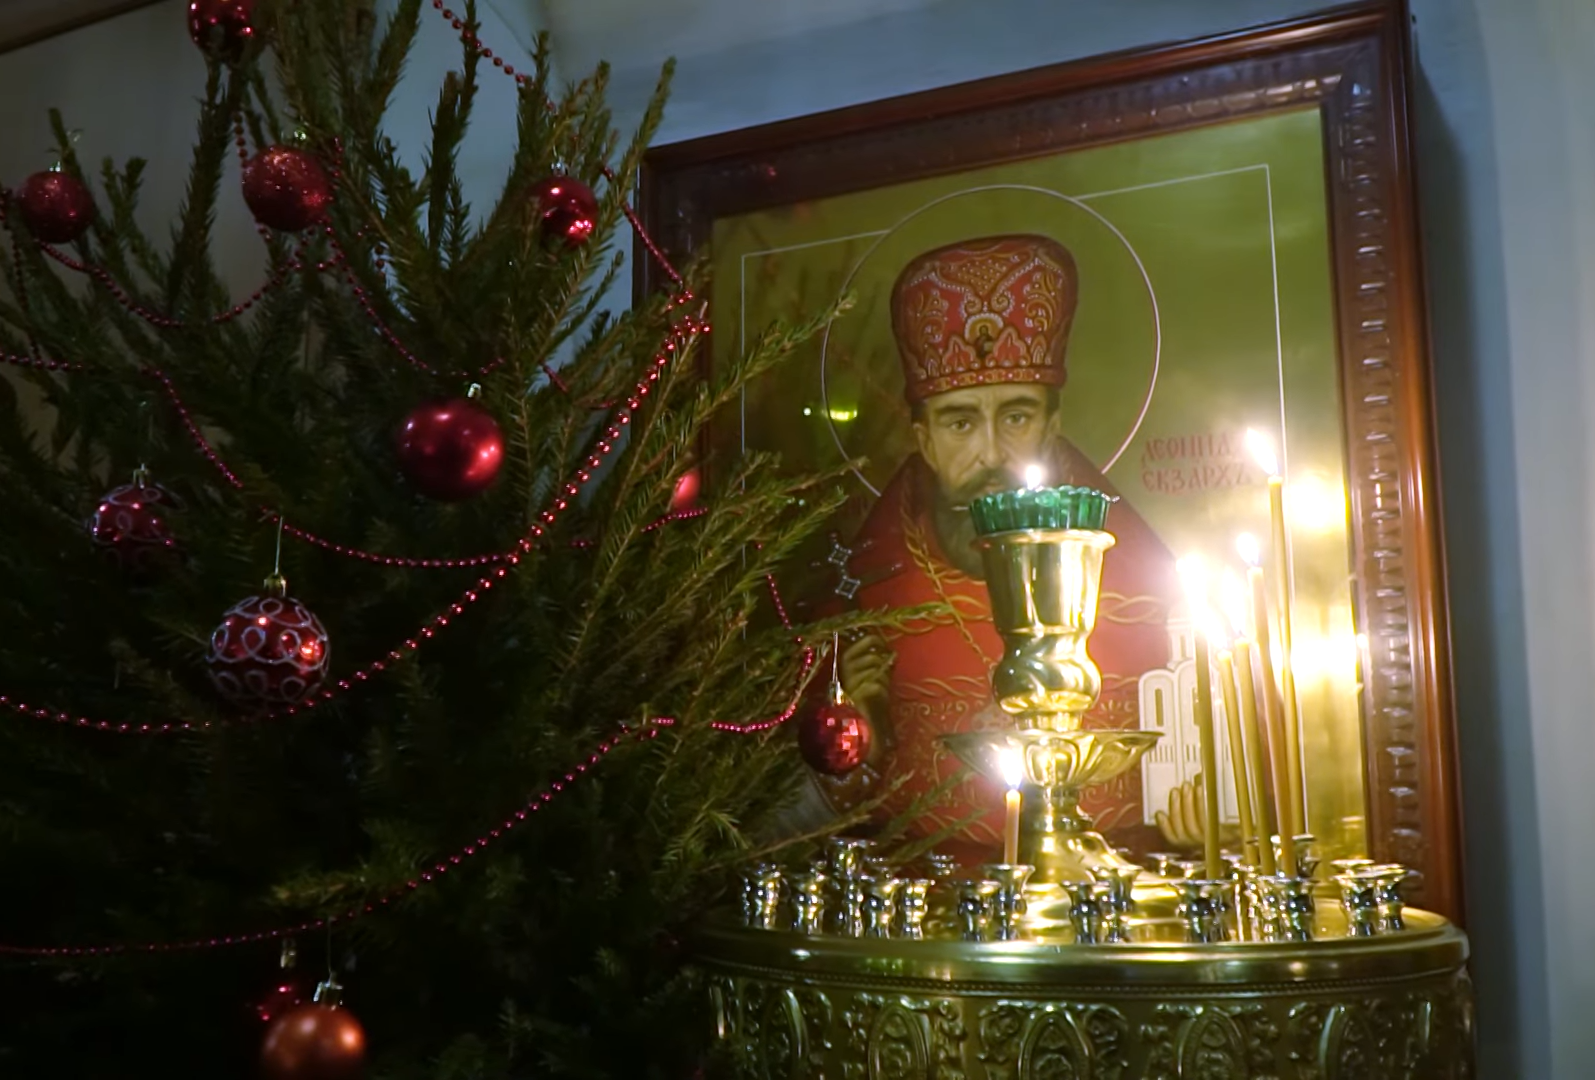 Празднование Рождества Христова в петербургском приходе Сошествия Святого Духа католиков византийского обряда (ВИДЕО)